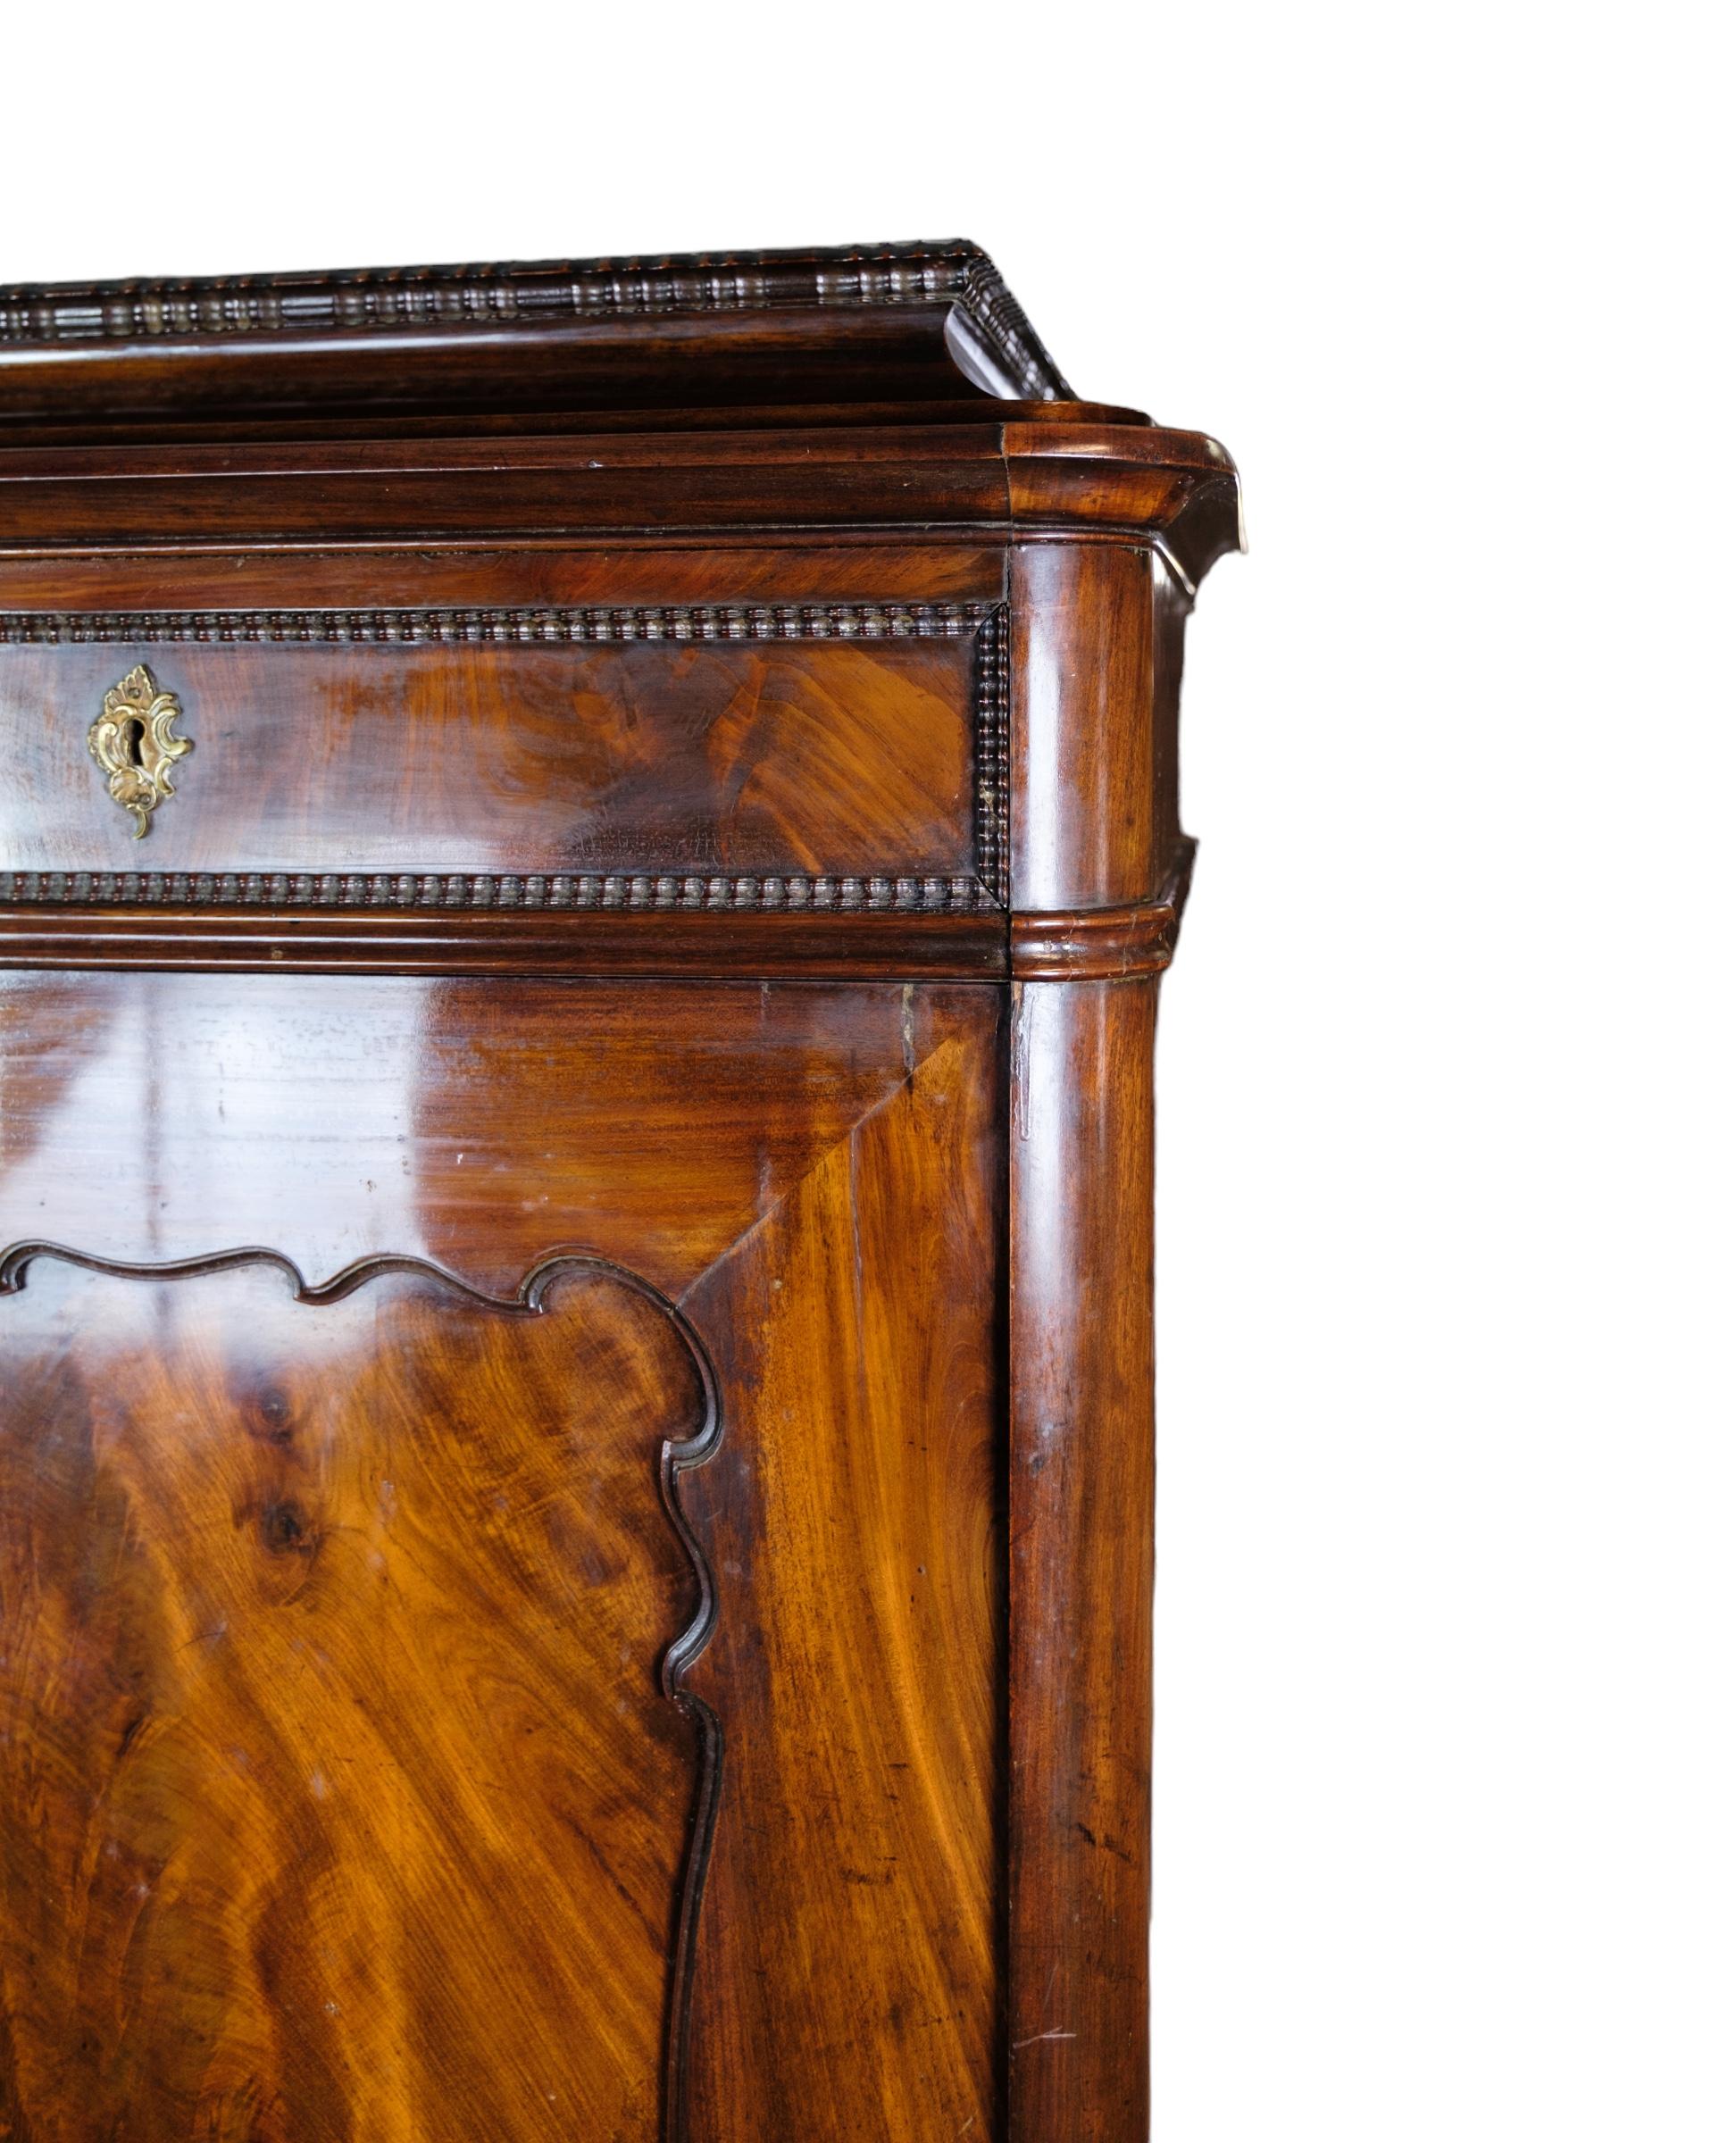 Grand meuble en acajou poli en bel état ancien avec 2 tiroirs et une porte avec étagères des années 1850.
Mesures en cm : H:155 L:67 P:43,5